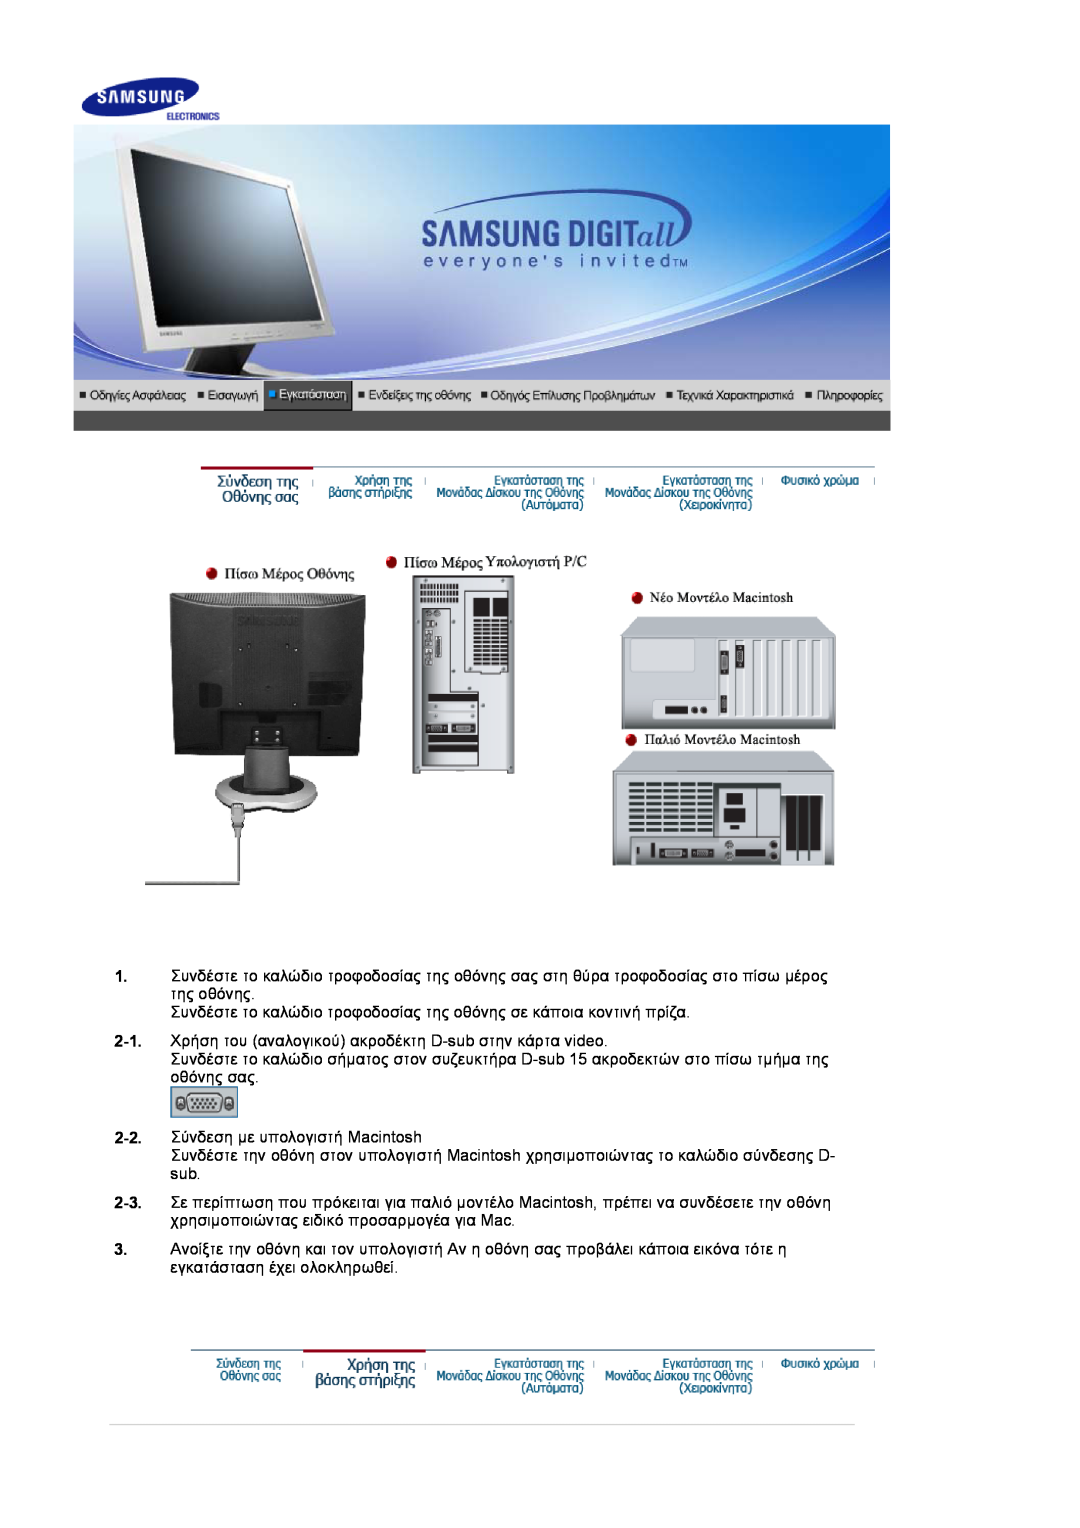 Samsung LS17MJVKS/EDC manual Συνδέστε το καλώδιο τροφοδοσίας της οθόνης σε κάποια κοντινή πρίζα 